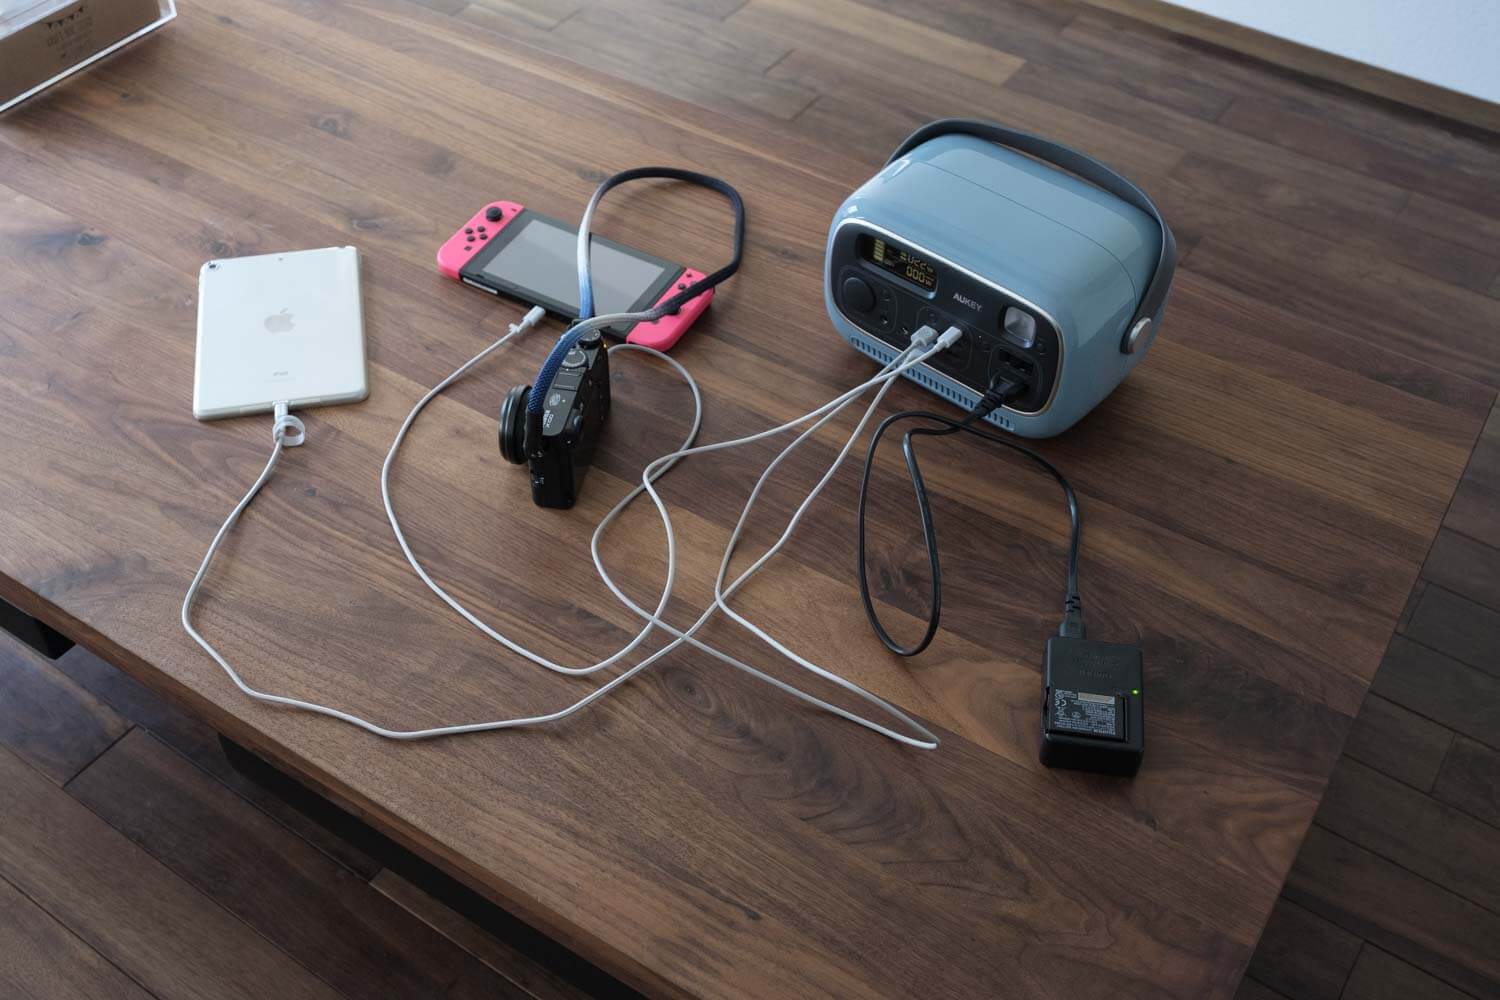 AUKEY PowerStudioでスイッチやカメラやiPad miniを充電しているところ